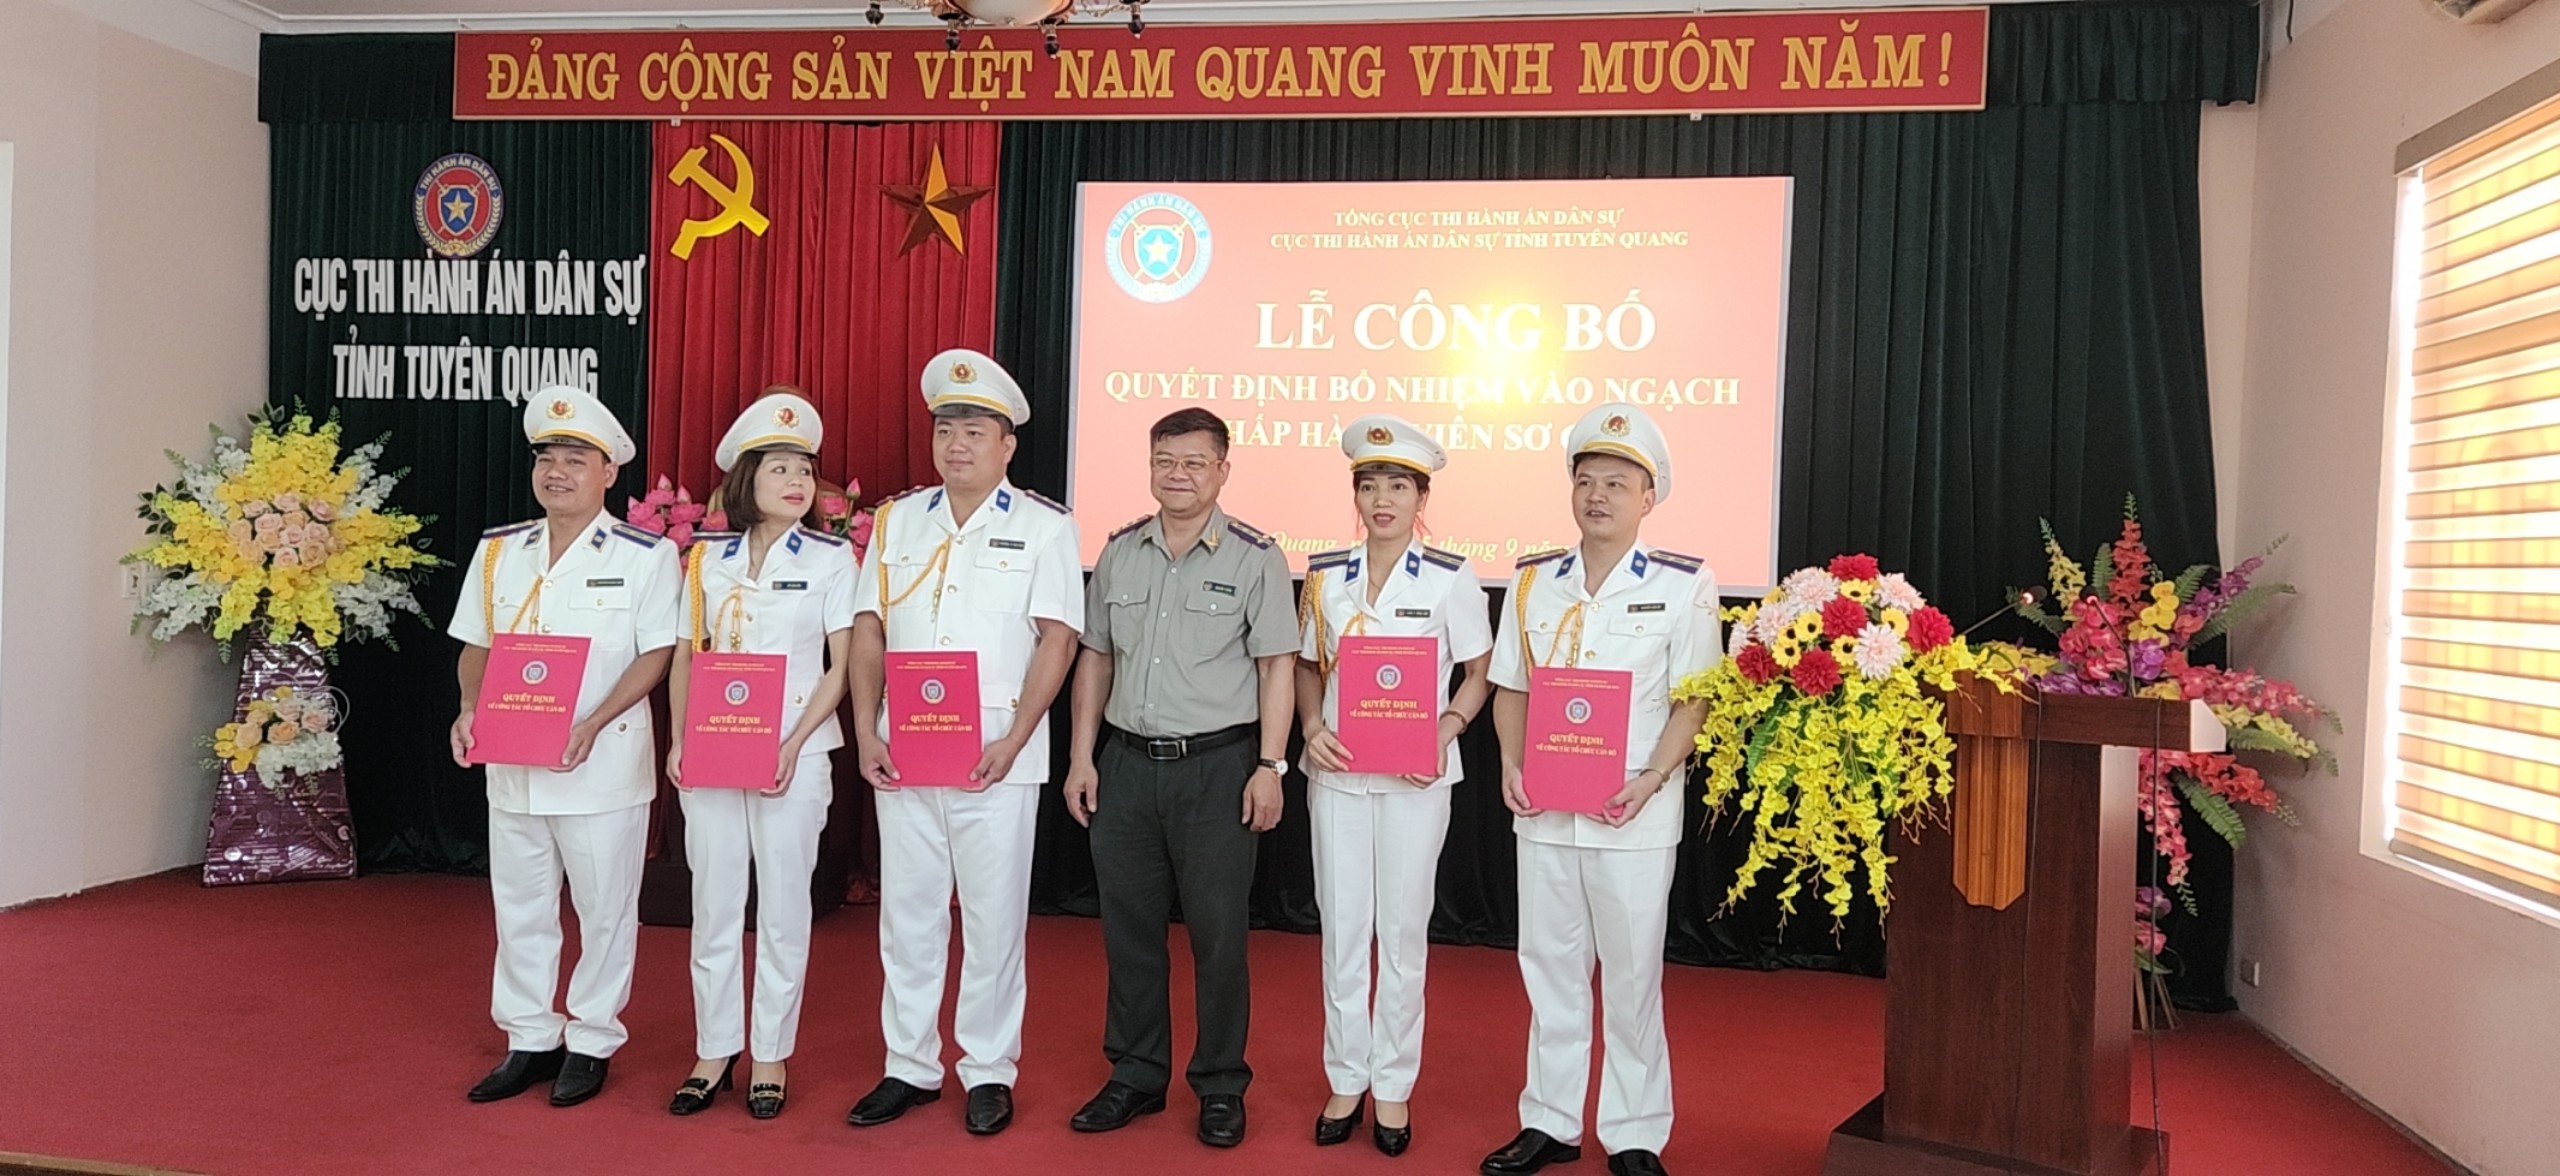 Cục THADS tỉnh Tuyên Quang công bố và trao quyết định bổ nhiệm ngạch Chấp hành viên sơ cấp